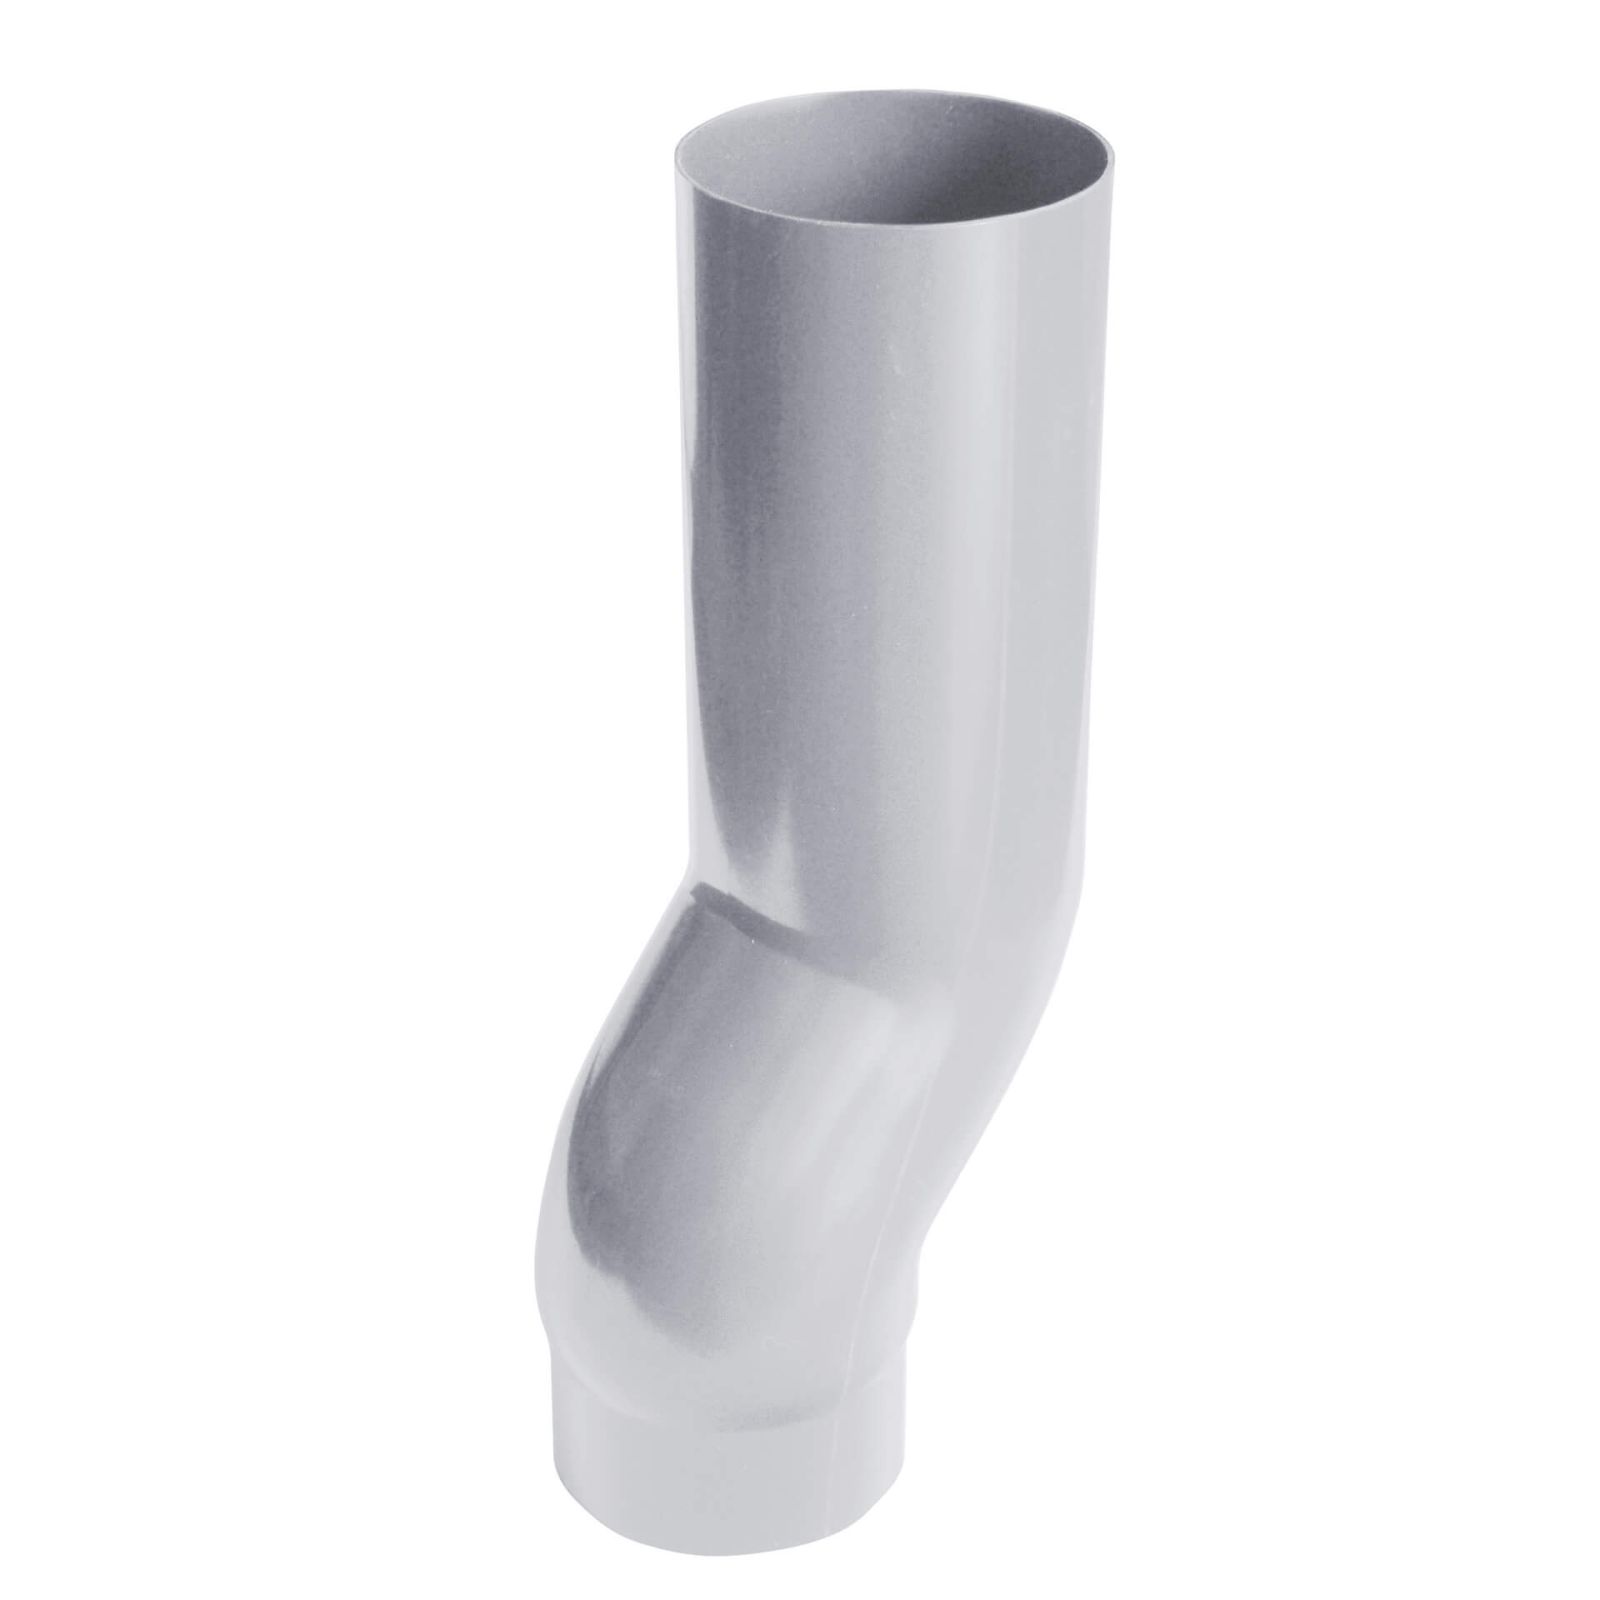 Sockelknie | PVC | Ø 110 mm | Farbe Grau